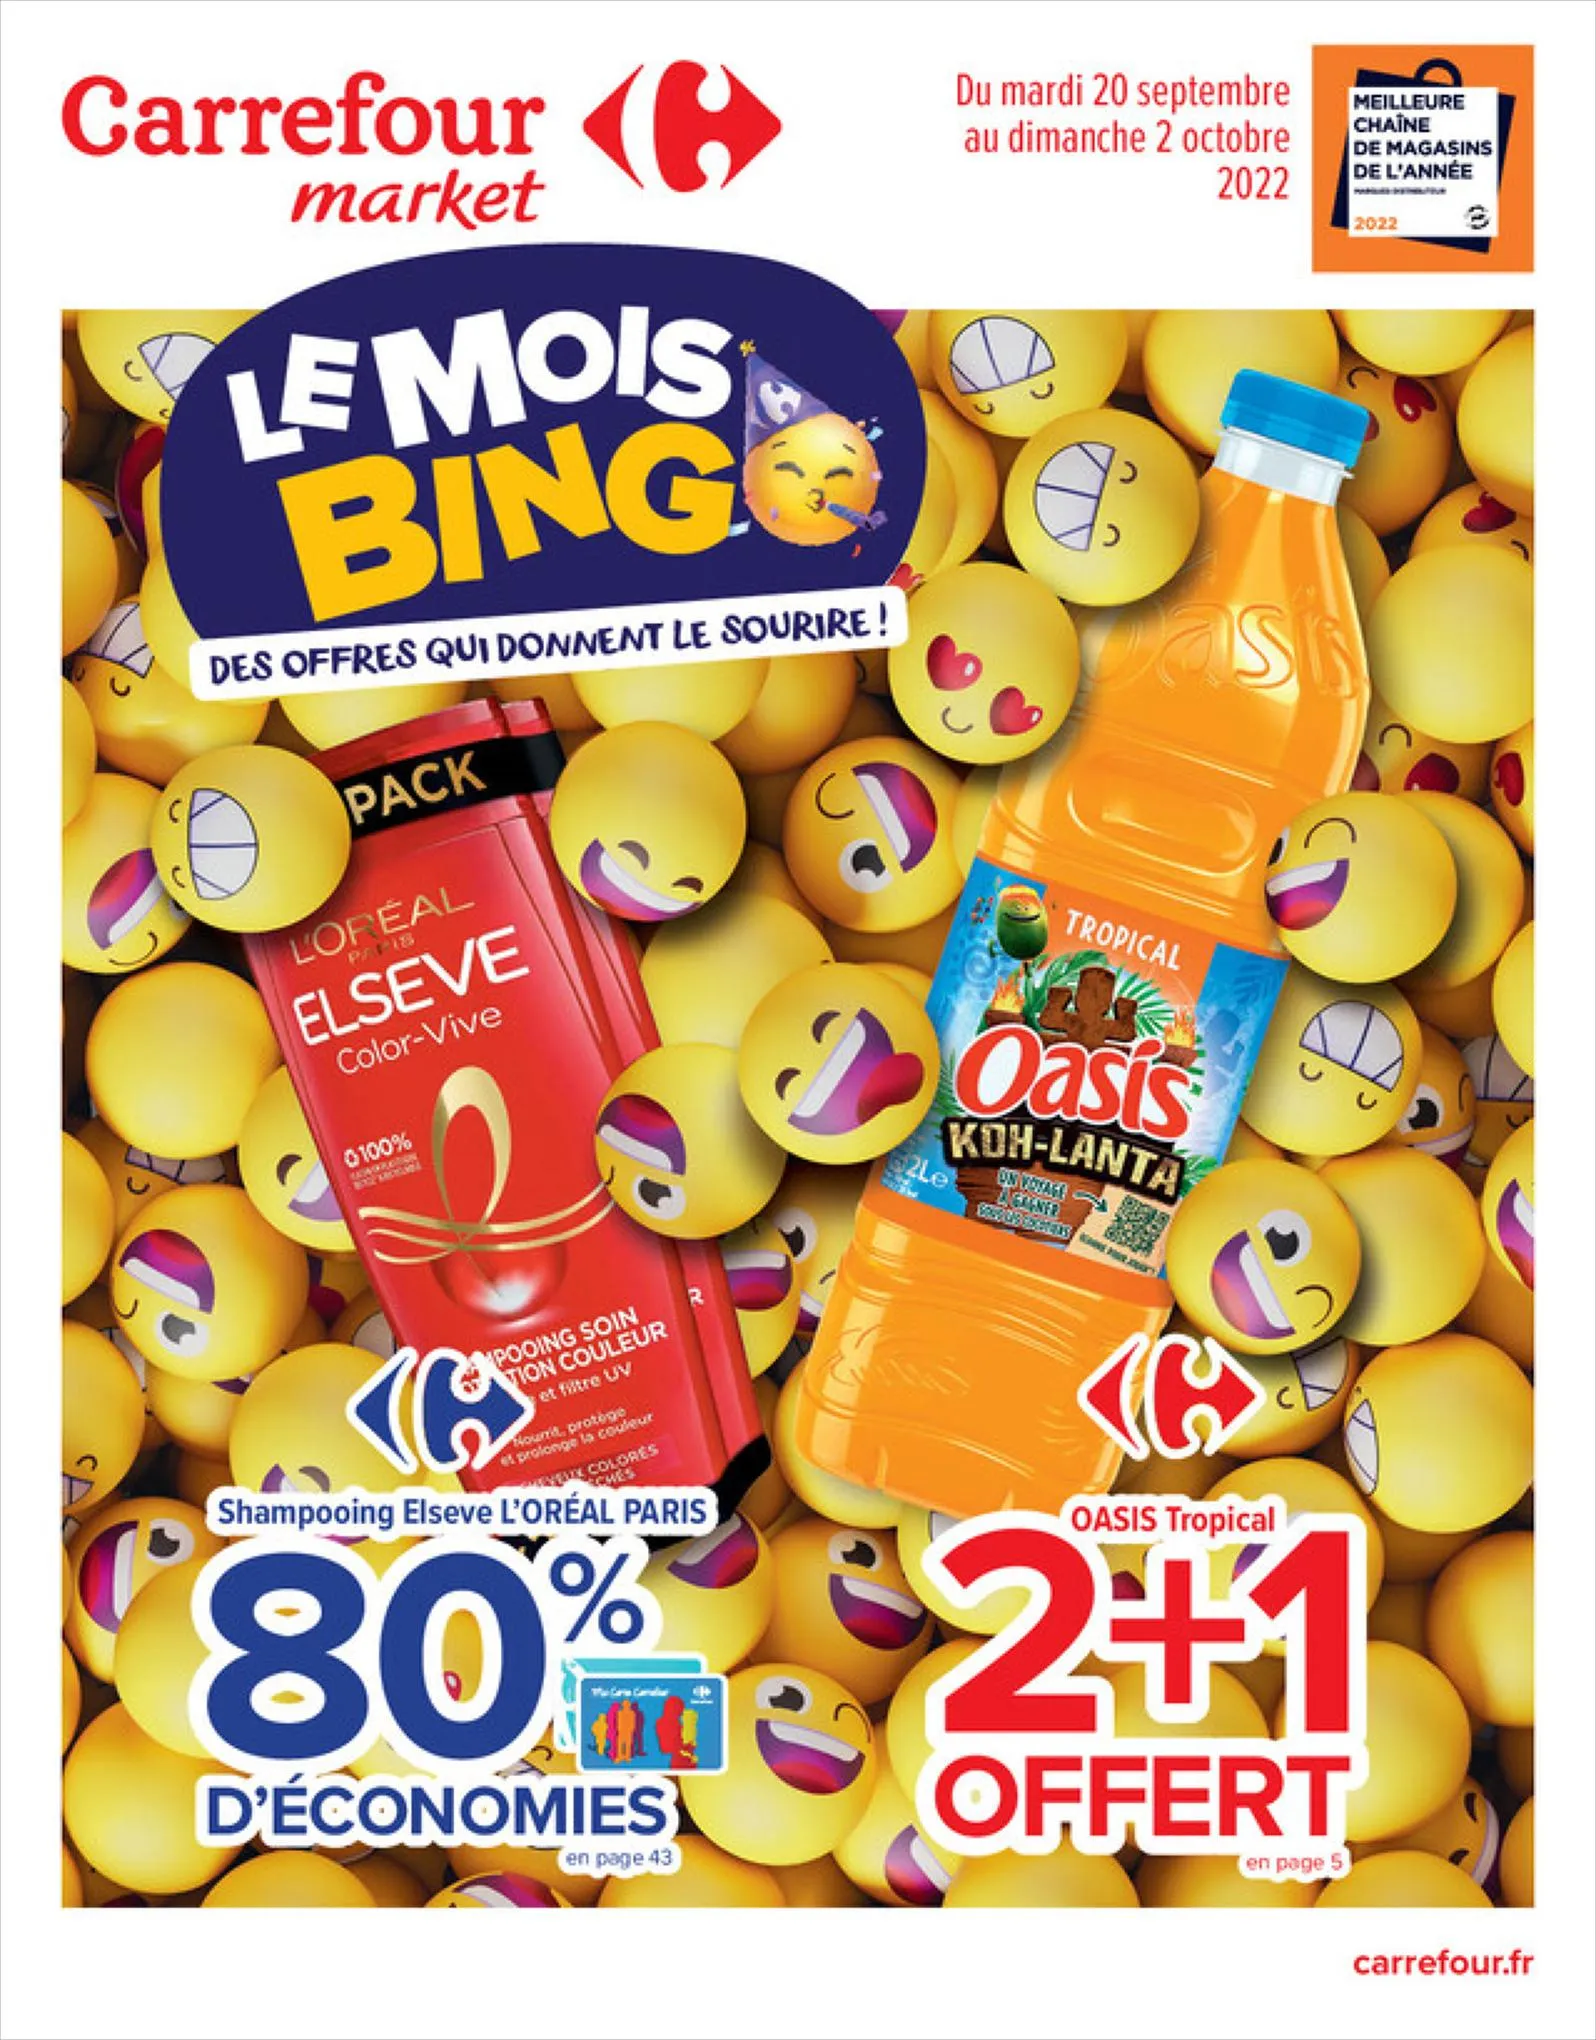 Catalogue  Le mois bingo Beauté, page 00001